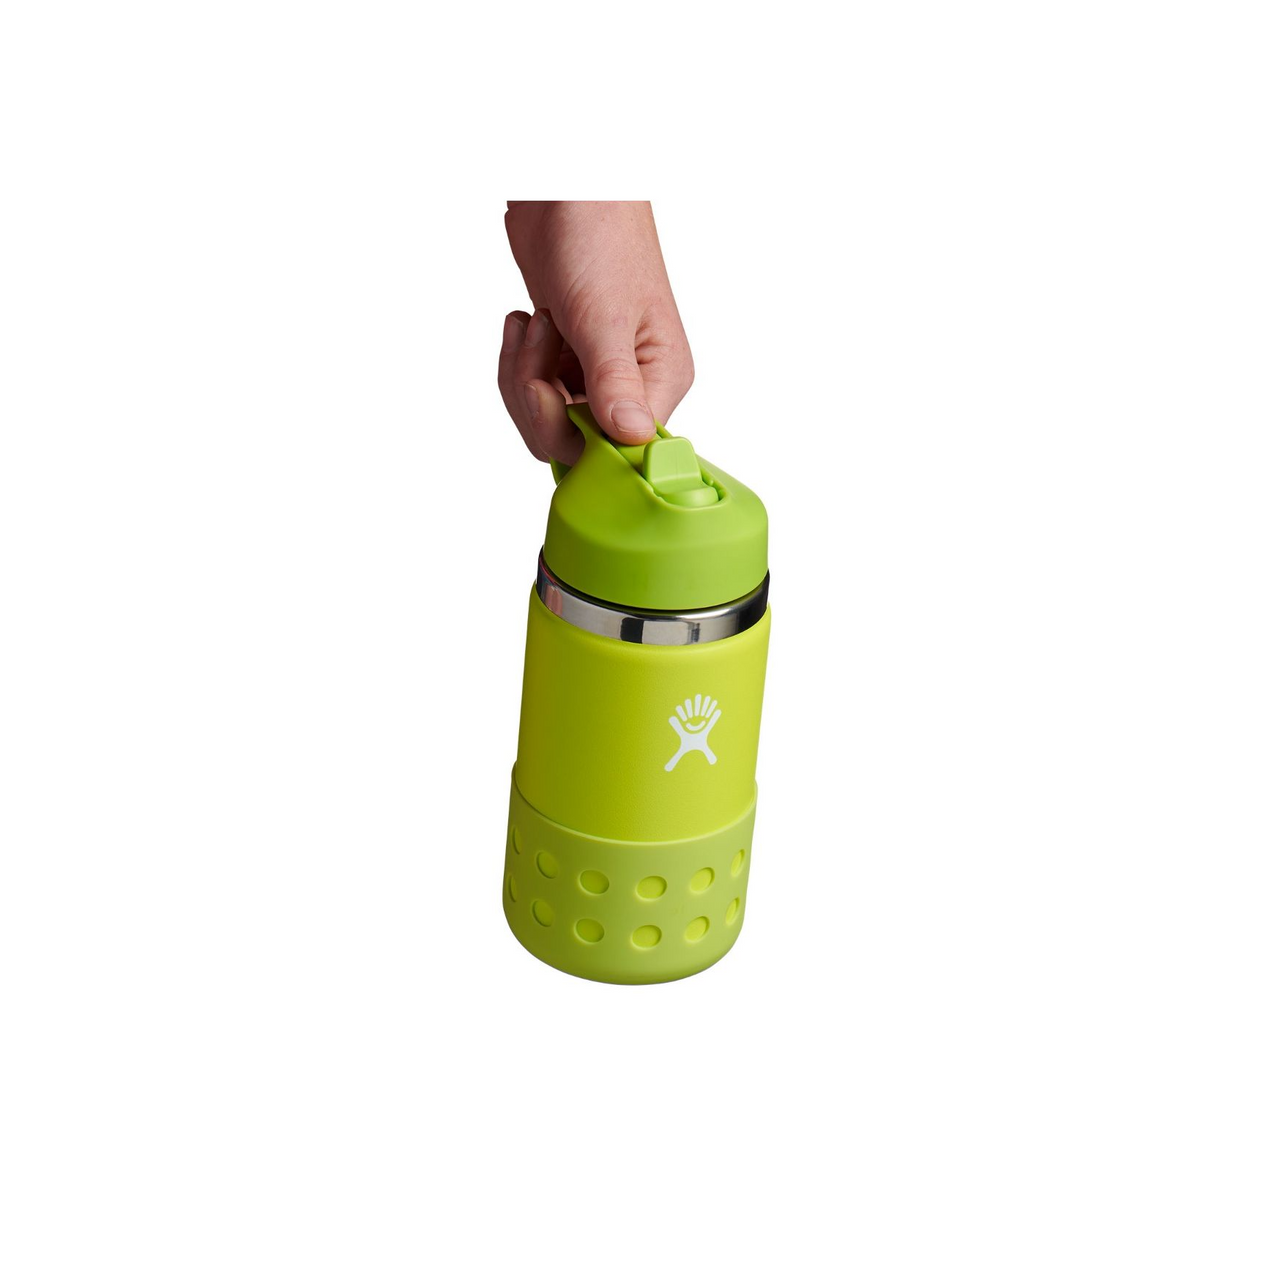 Hydro Flask 12 oz Kids Wide Mouth Straw Lid Bottle Firefly